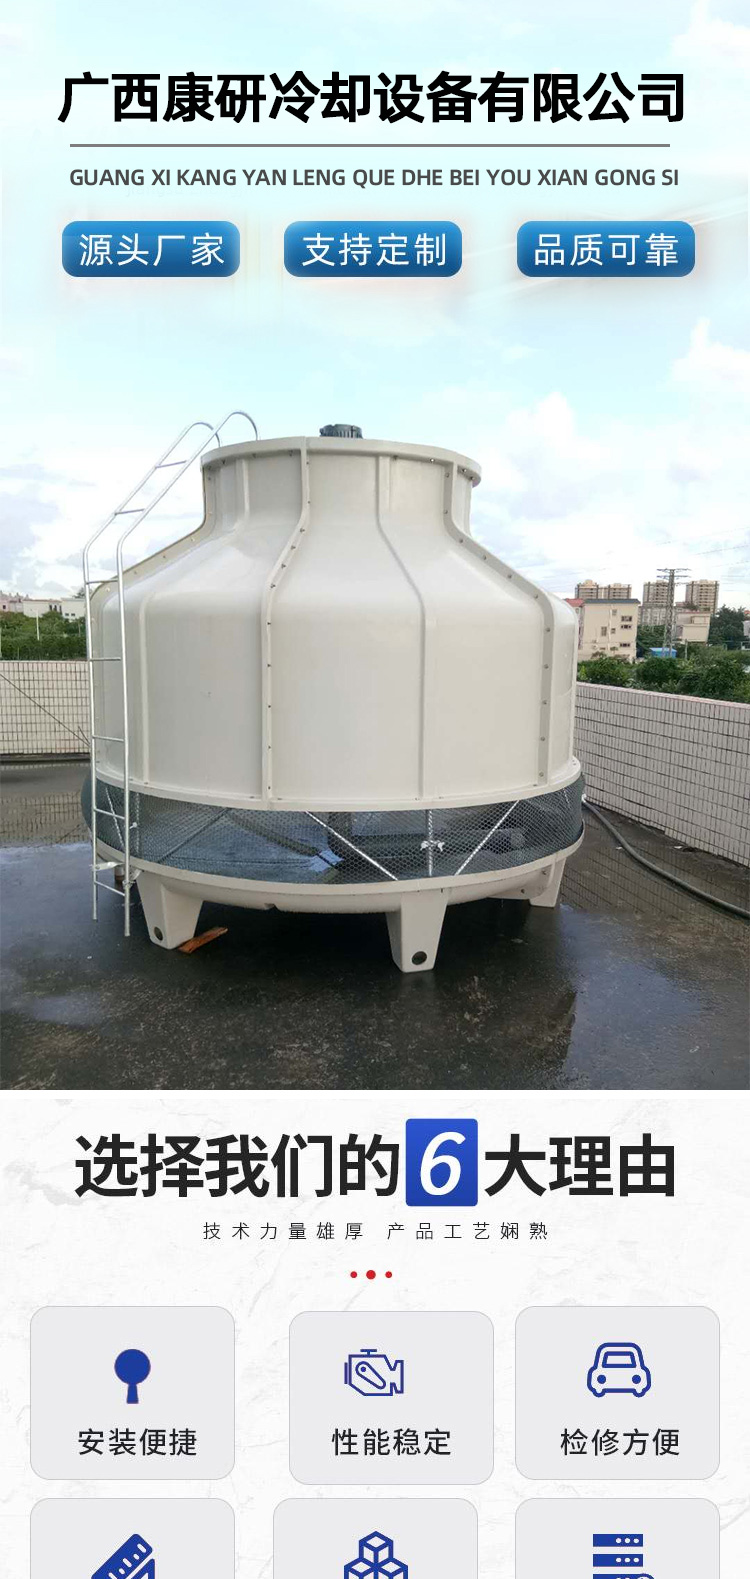 0331广西康研冷却设备有限公司_01.jpg